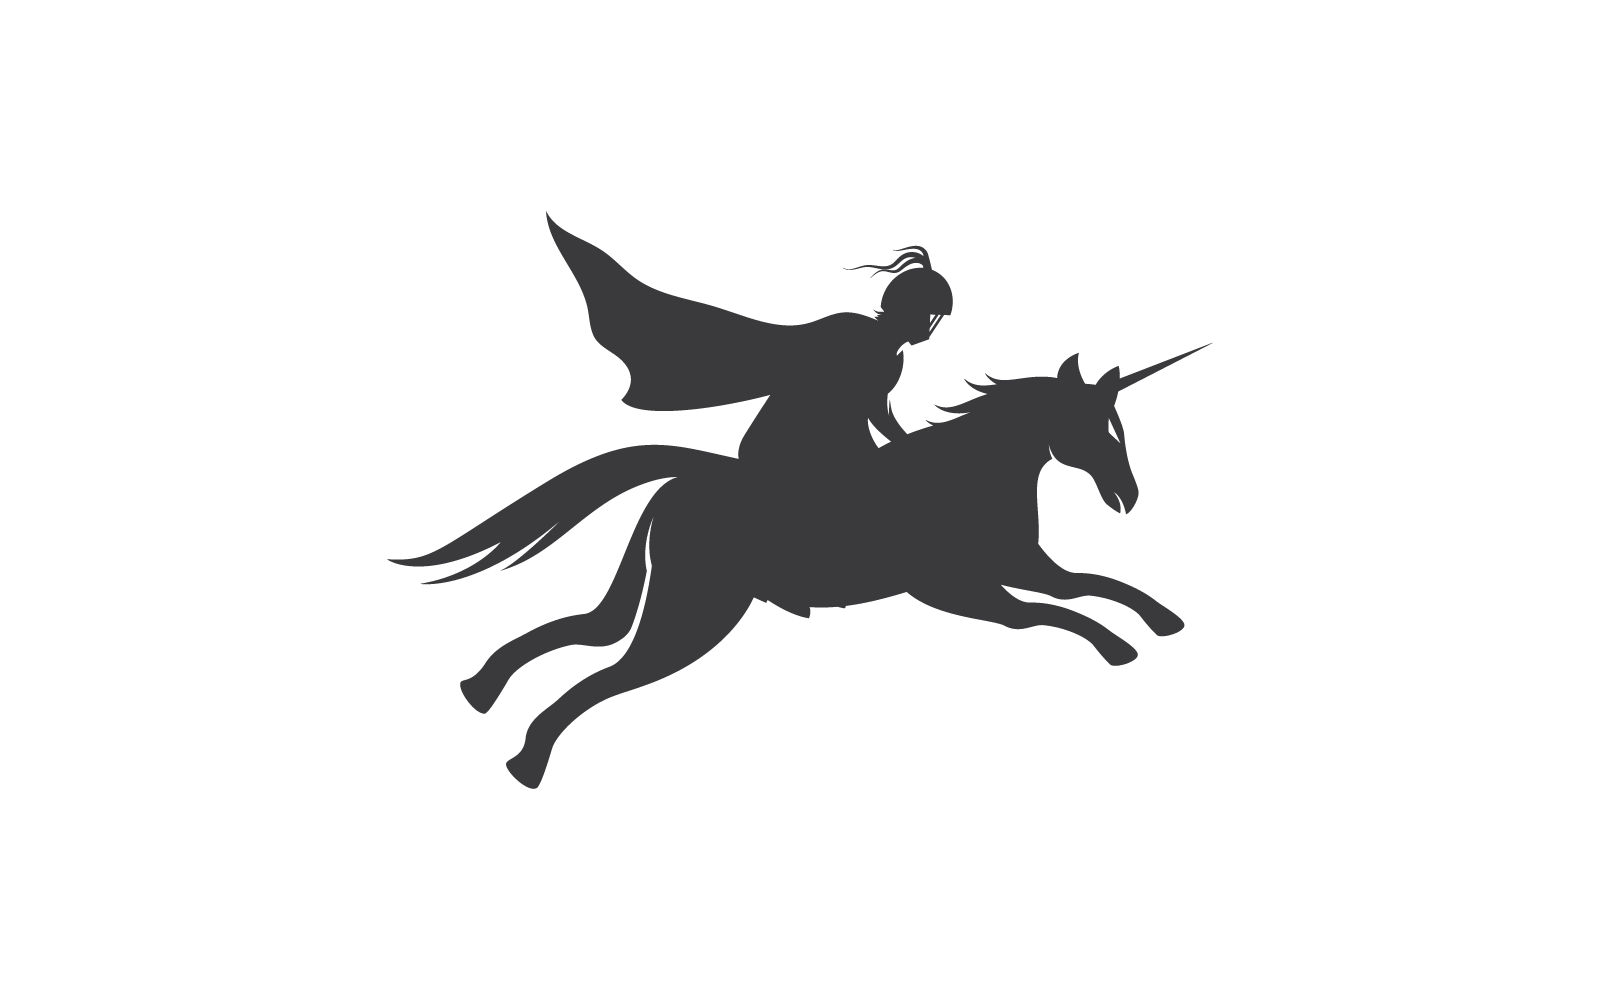 Horse knight hero logo icon vector design